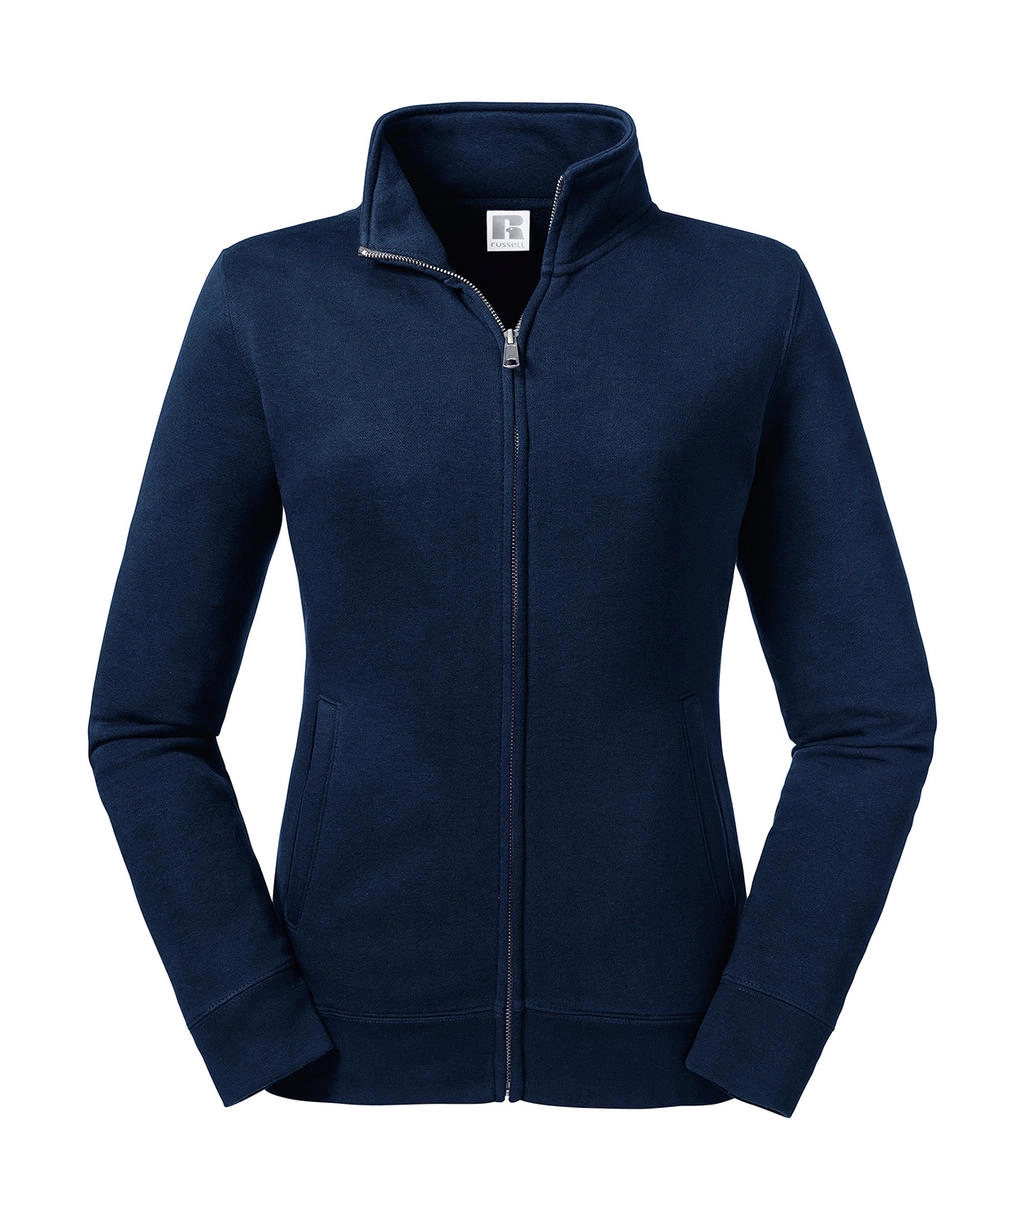 Ladies` Authentic Sweat Jacket zum Besticken und Bedrucken in der Farbe French Navy mit Ihren Logo, Schriftzug oder Motiv.